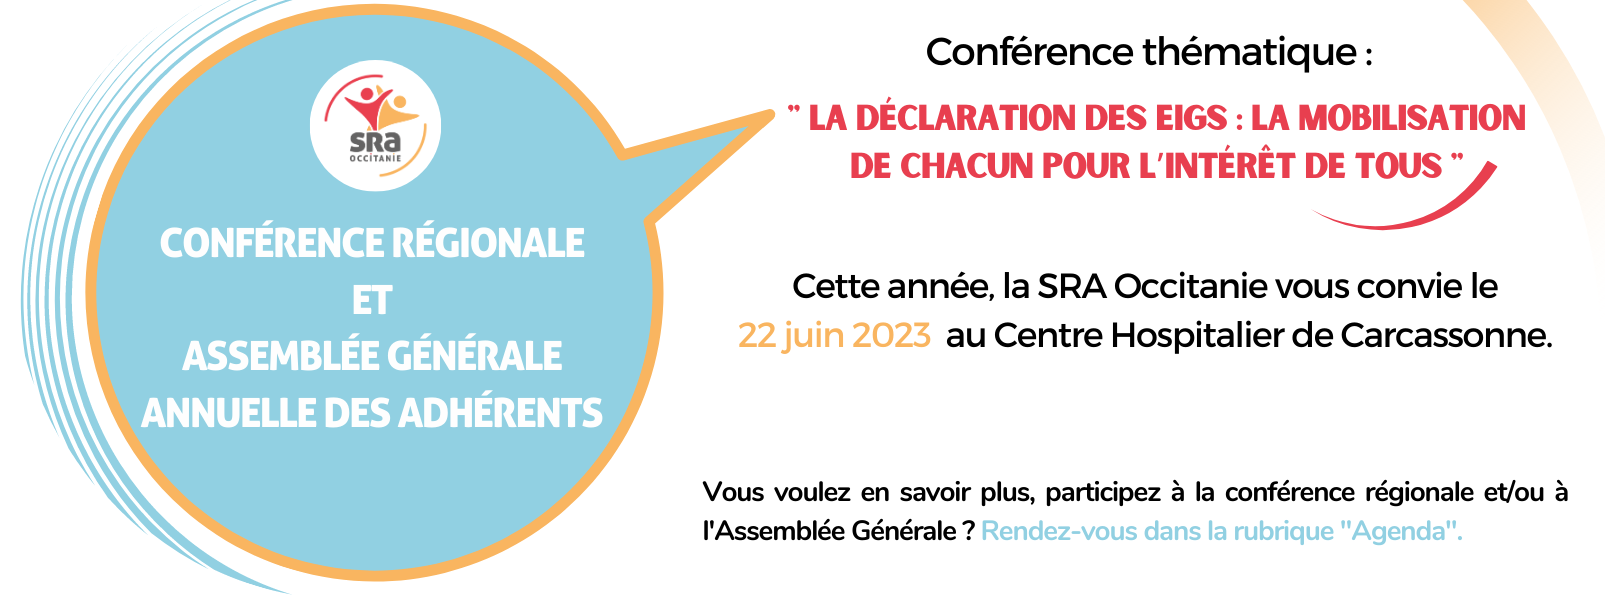 Conférence régionale  et  assemblée générale  annuelle des adhérents 